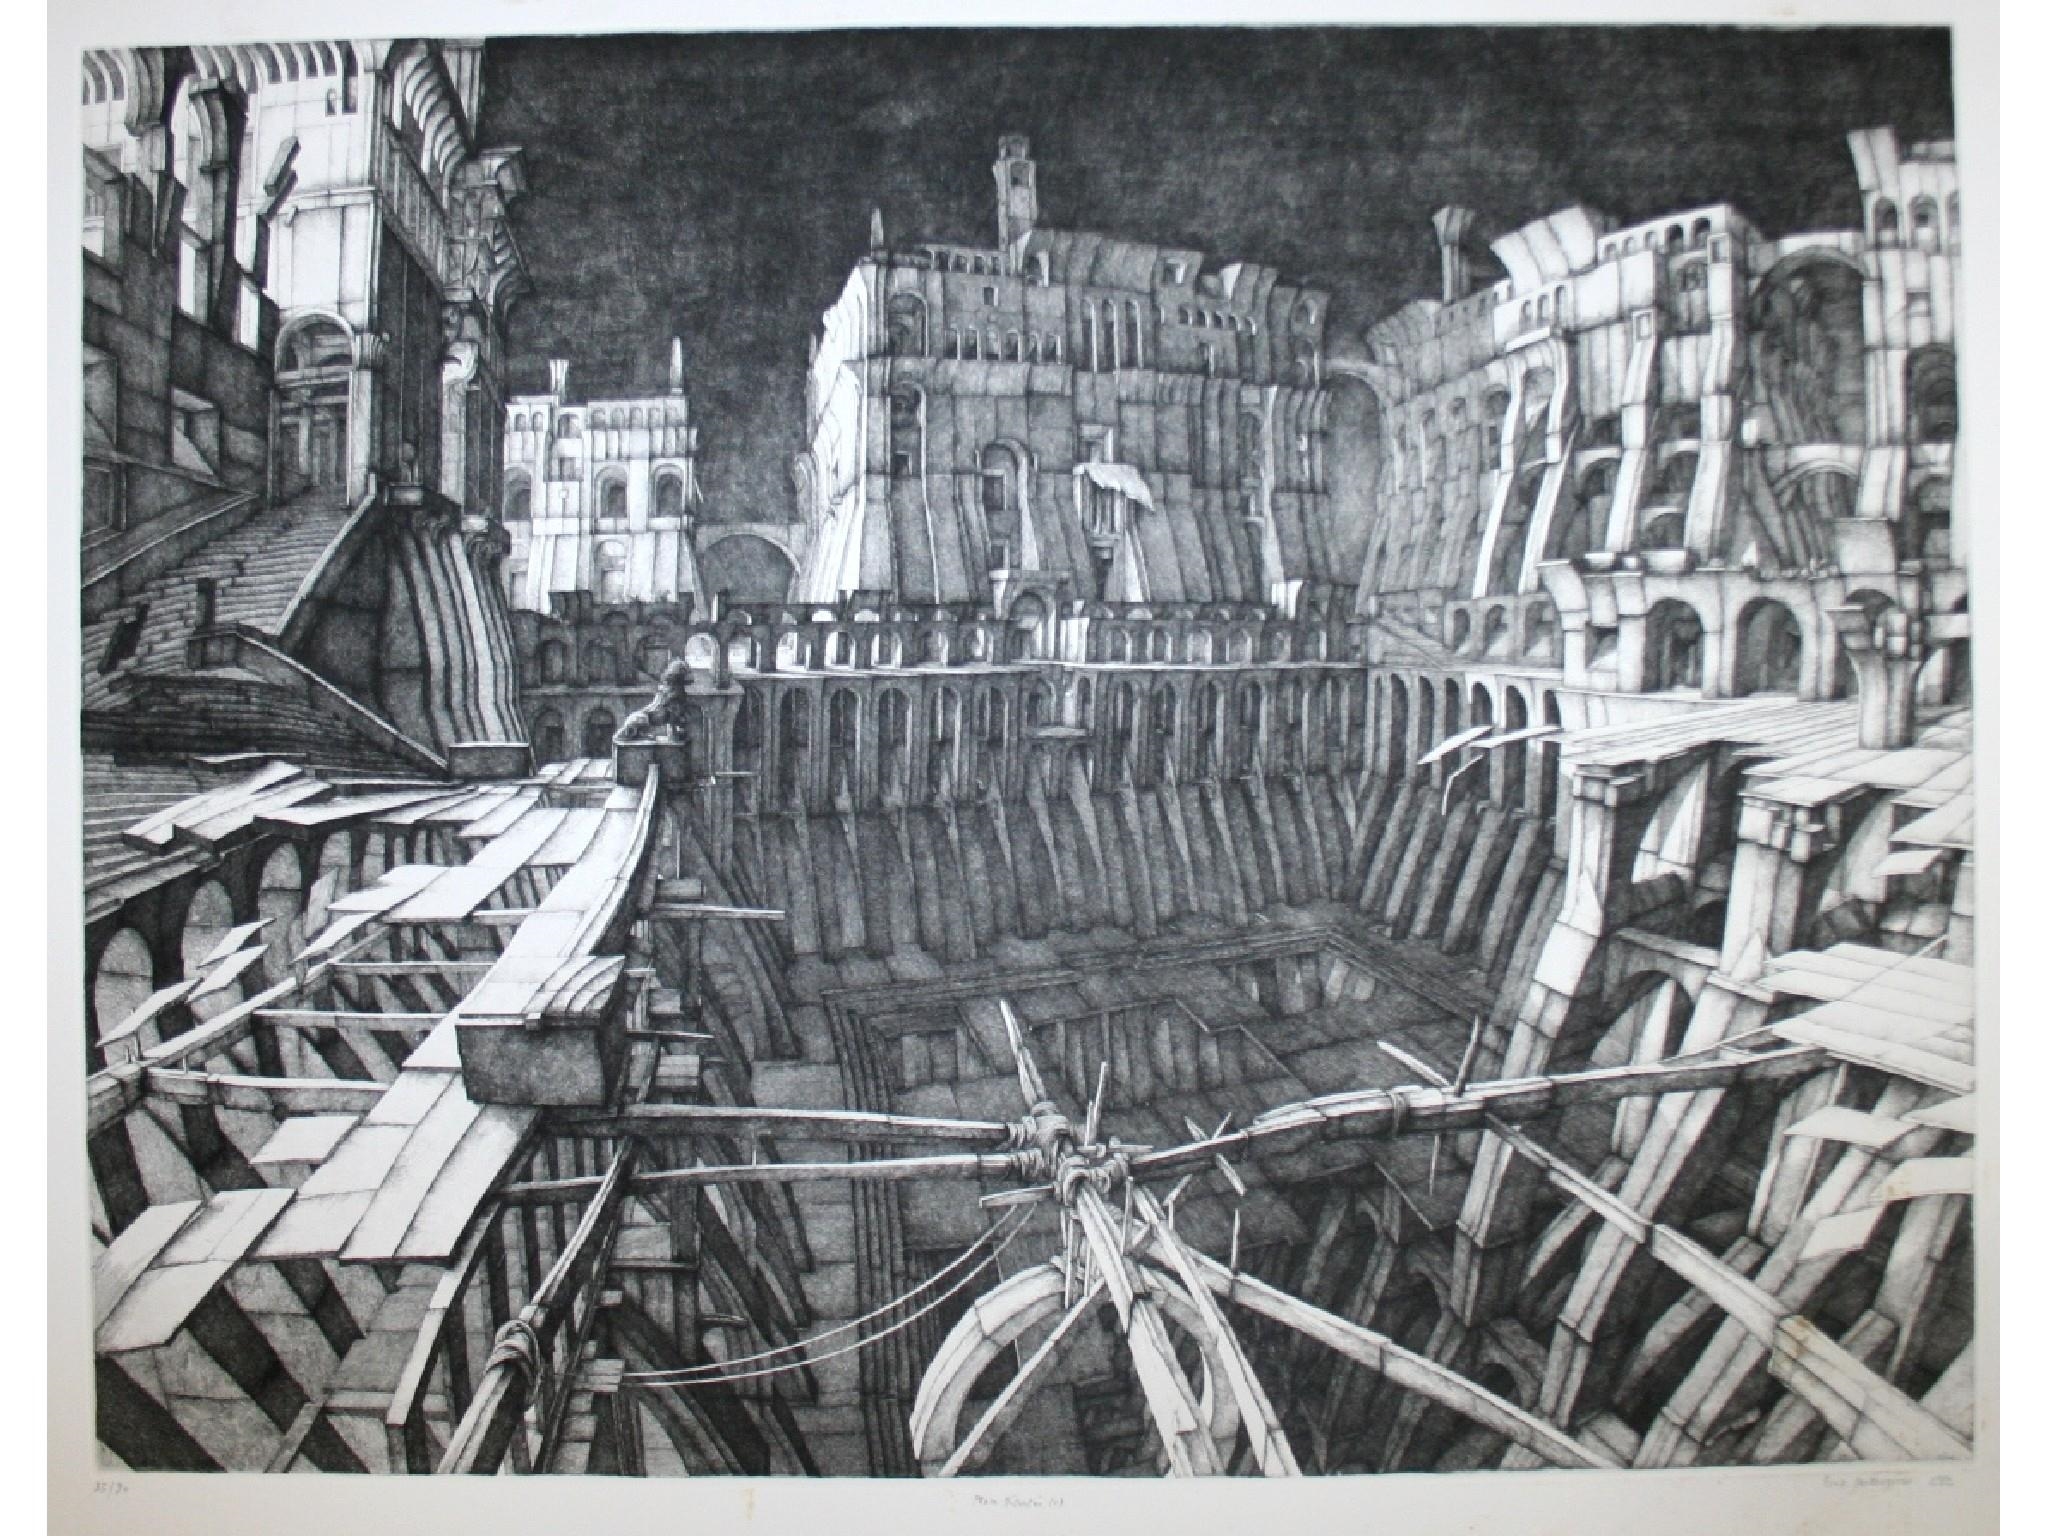 La place desertee (fitch 37) by Erik Desmazières, 1982